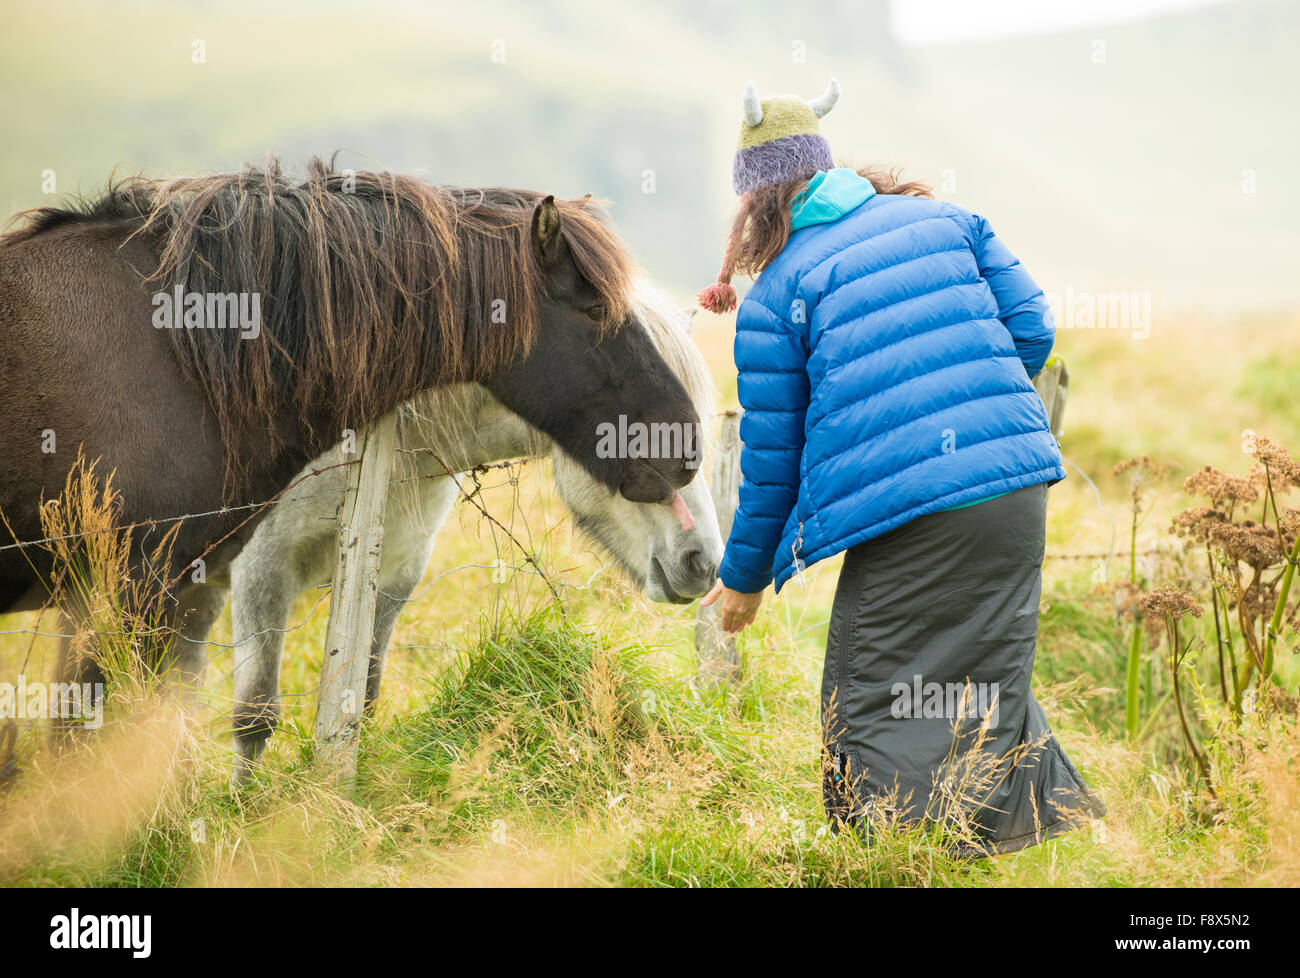 Fuera de Vik. Mujer interactuando con caballos islandeses. Foto de stock